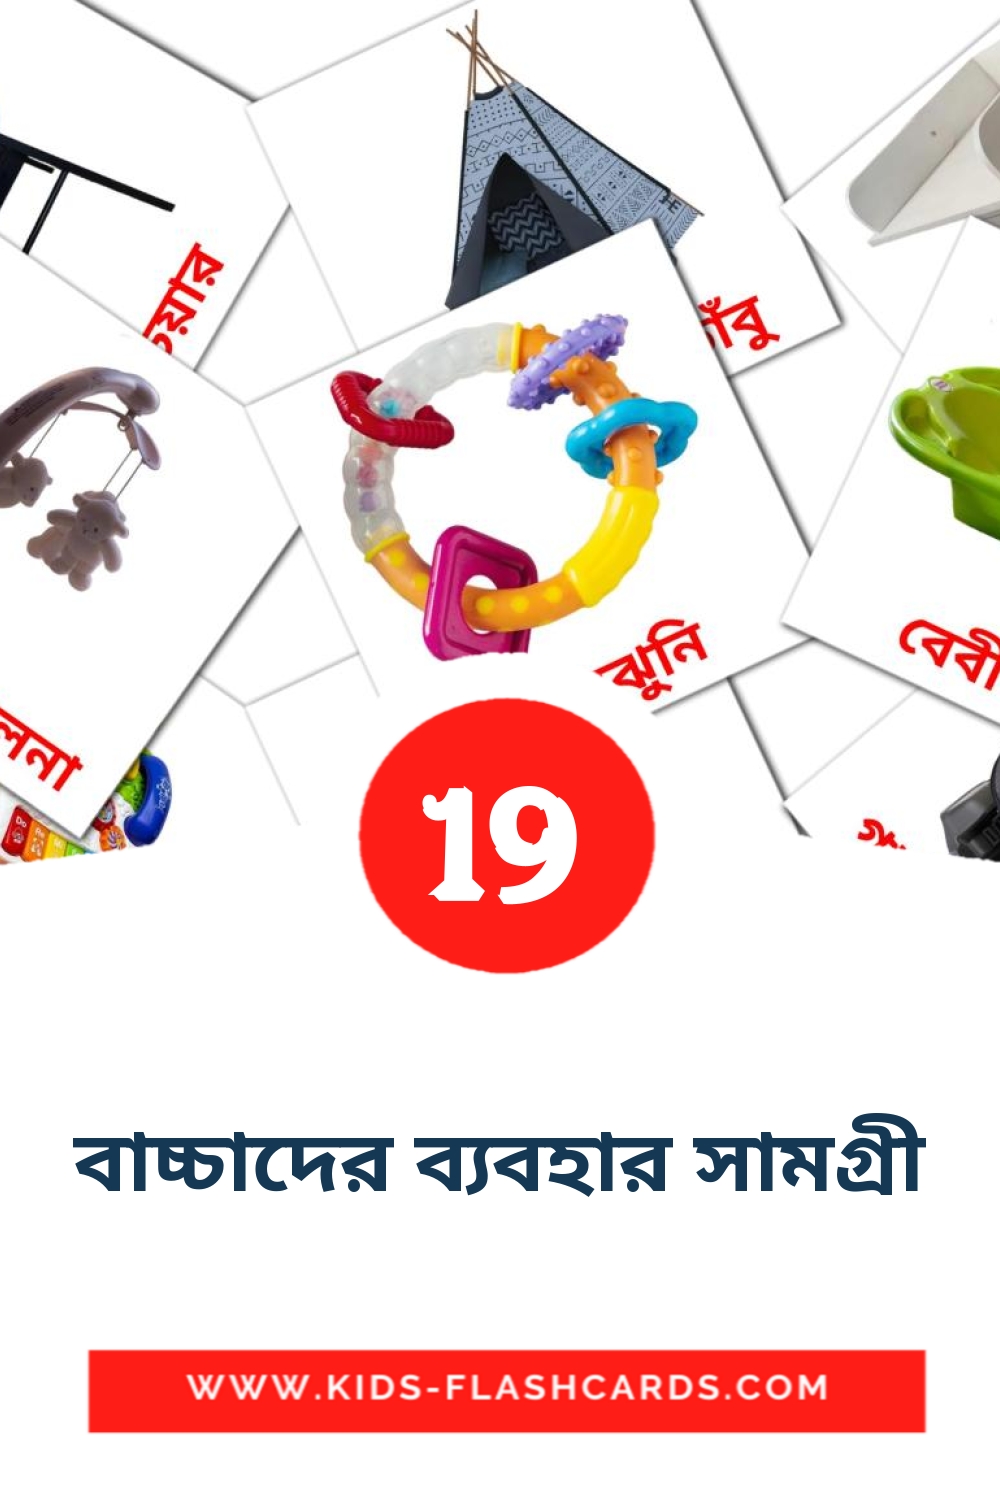 19 বাচ্চাদের ব্যবহার সামগ্রী Bildkarten für den Kindergarten auf Bengalisch